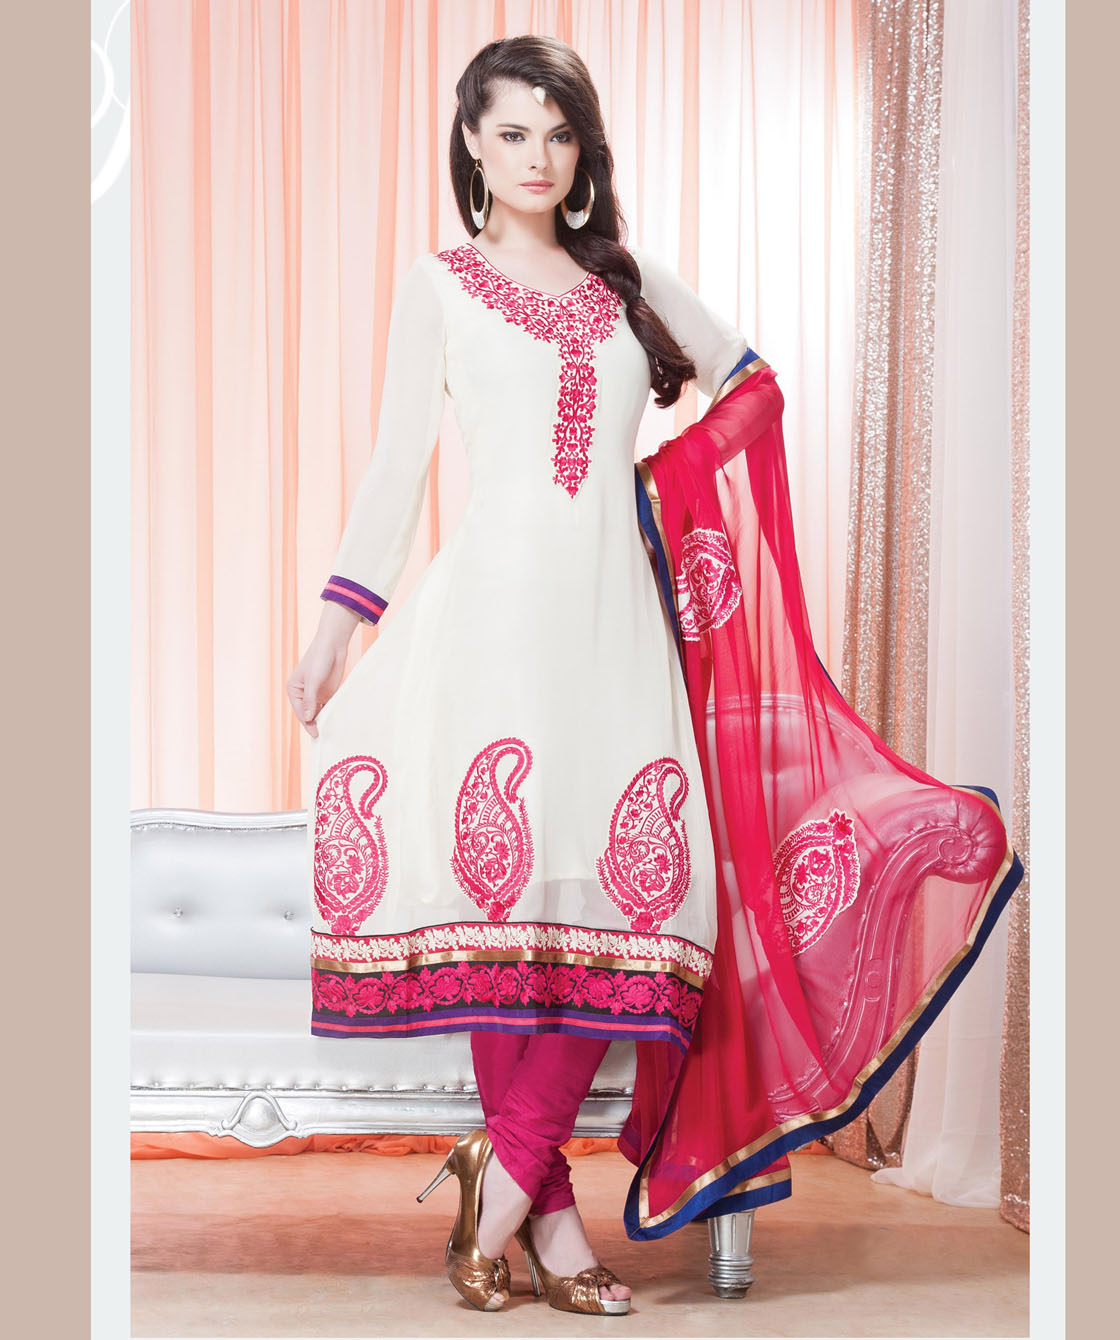 Indian Salwar Kameez Online 2013-2014 | New Party Dresses Fashion ...